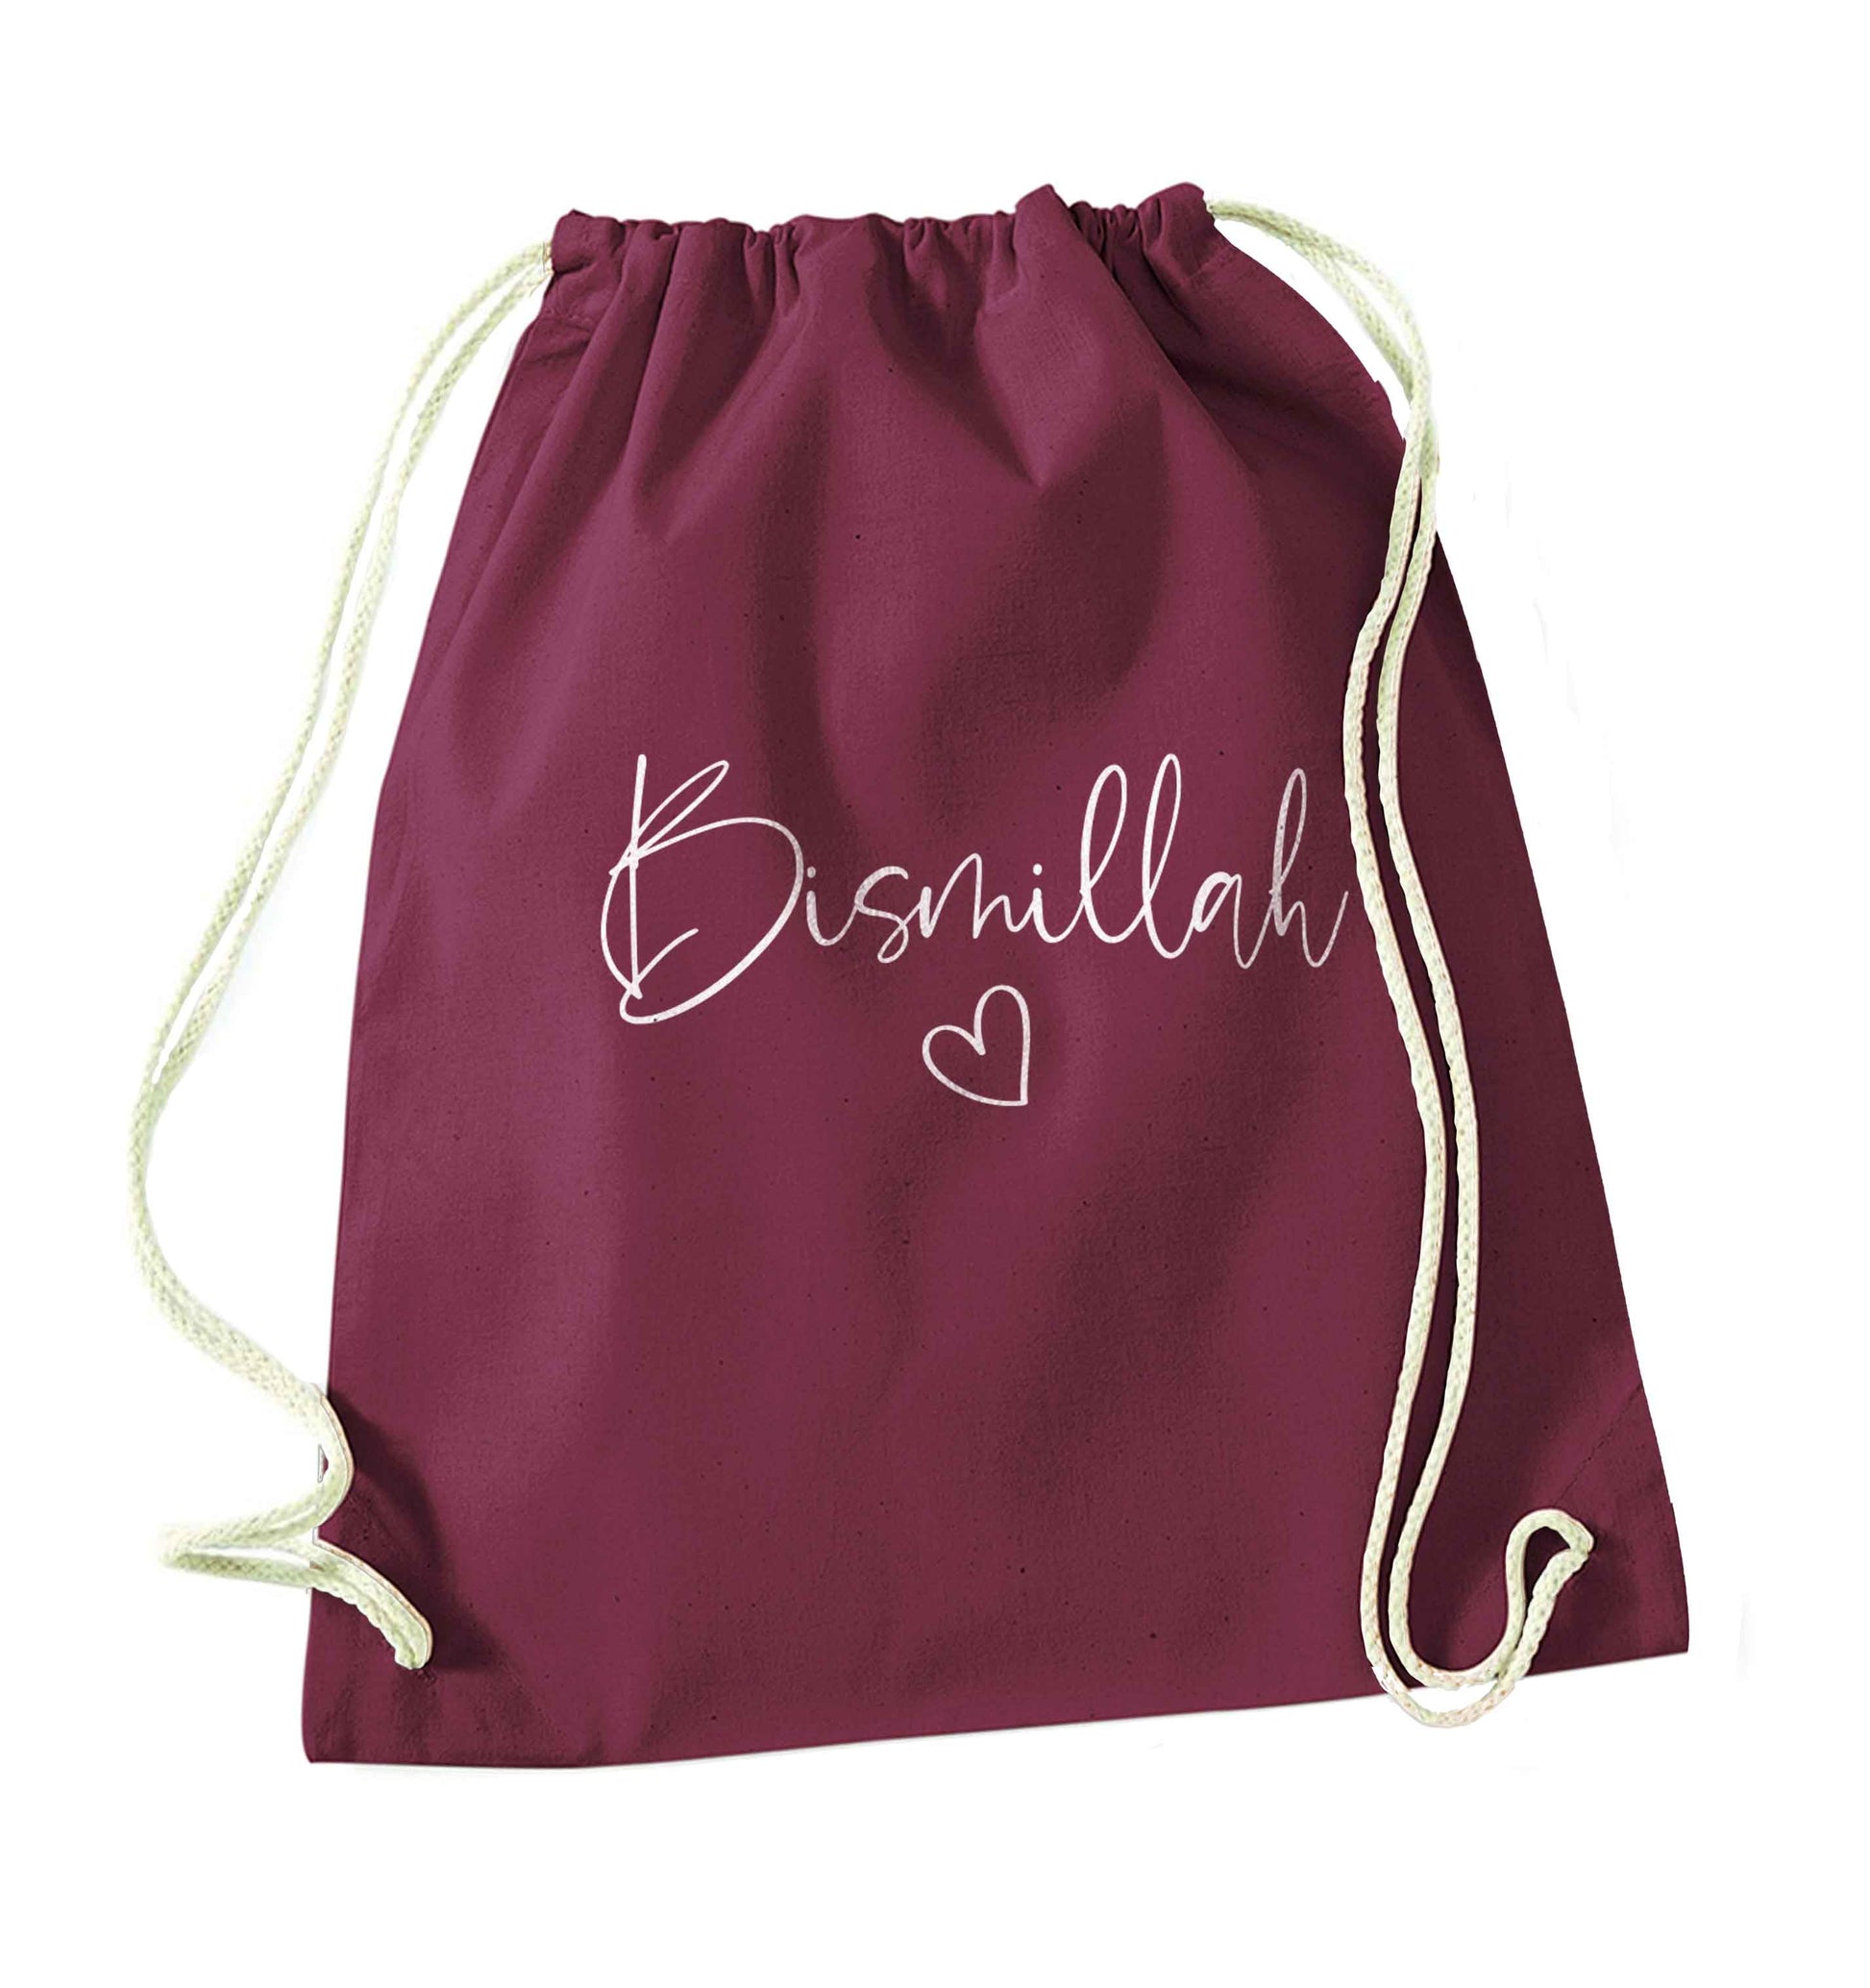 Bismillah maroon drawstring bag